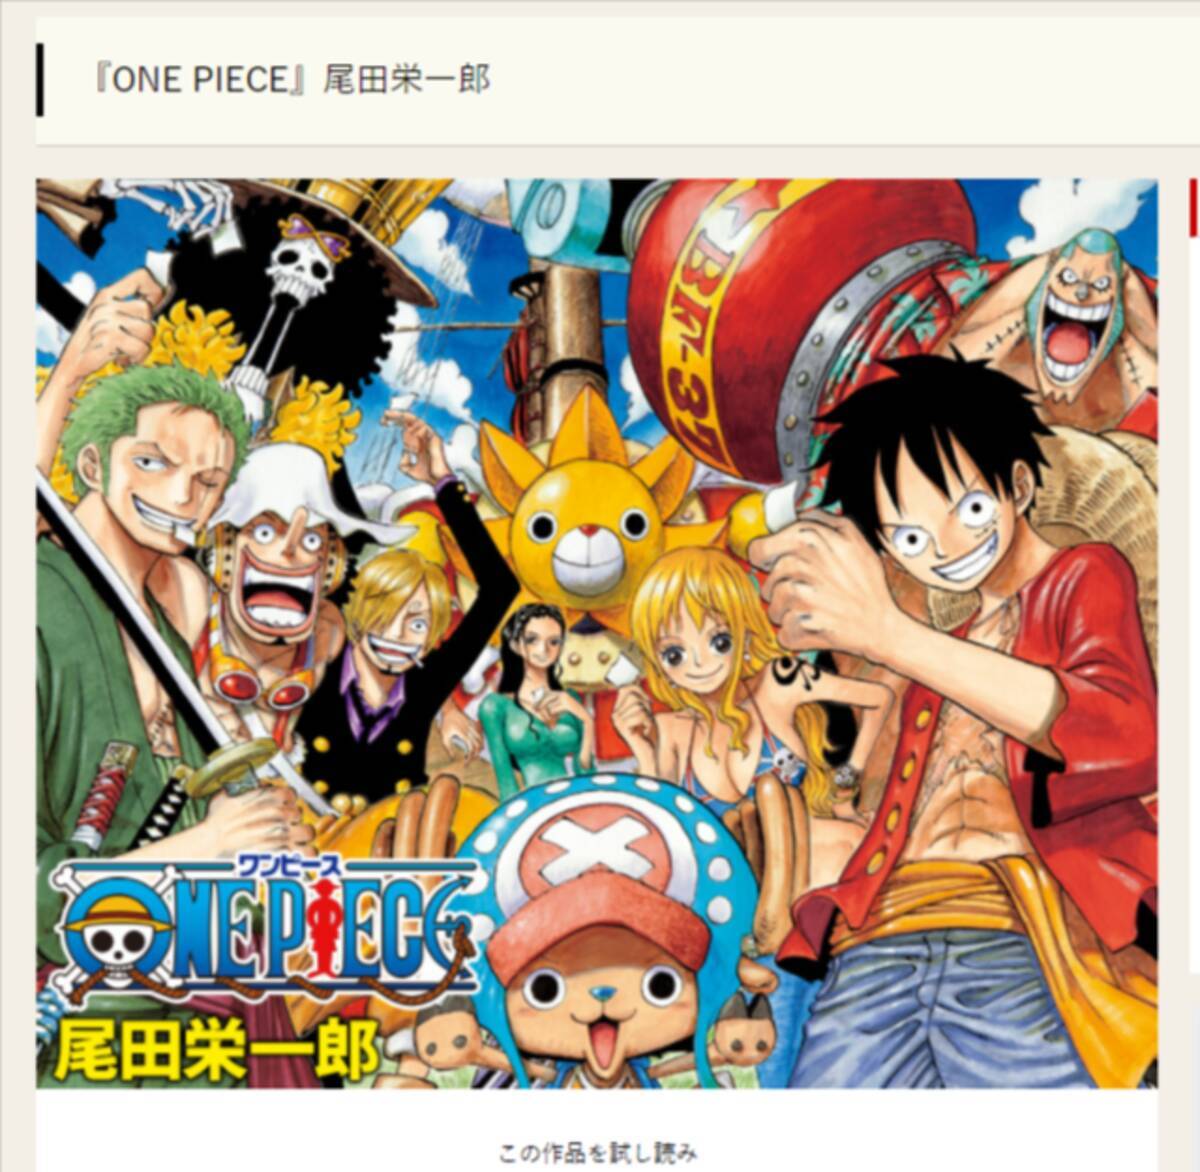 One Piece サンジの 眉毛の向き が不穏 ゾロの言葉に伏線があった 第1031話 21年11月10日 エキサイトニュース